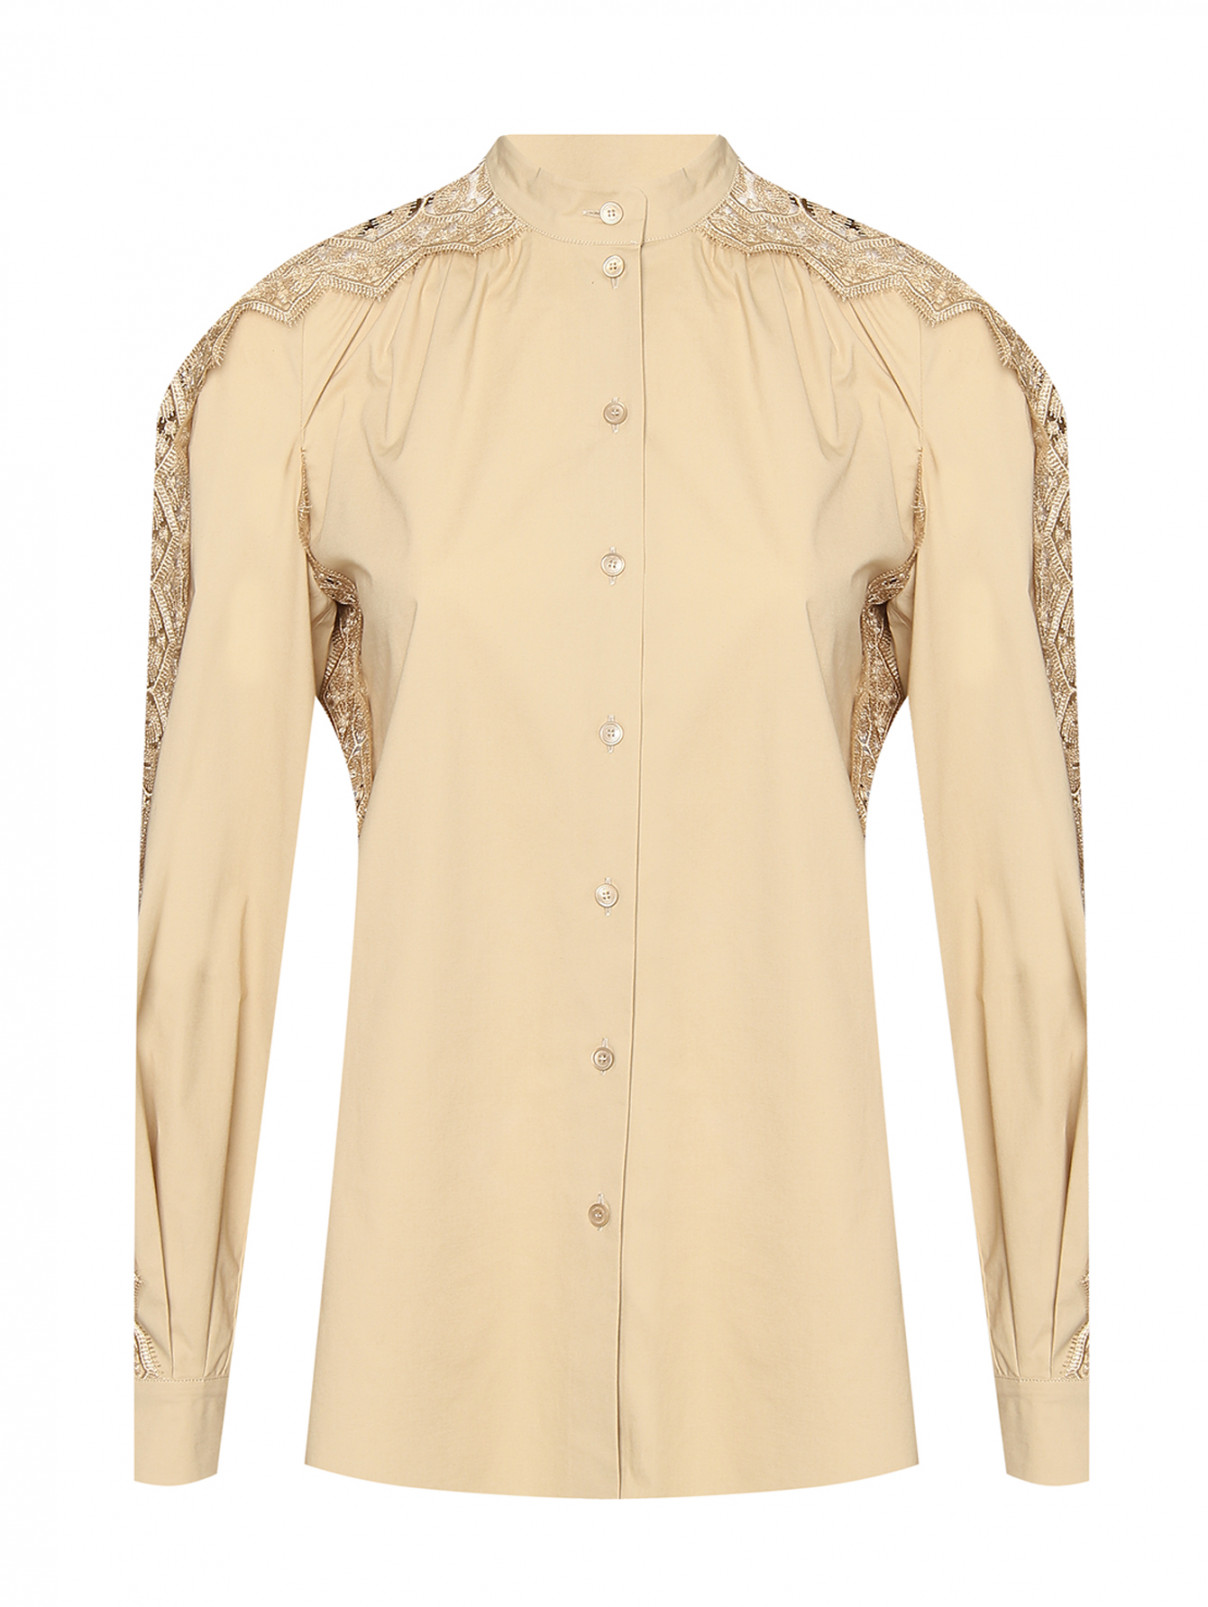 Блуза из хлопка декорированная кружевом Alberta Ferretti  –  Общий вид  – Цвет:  Бежевый